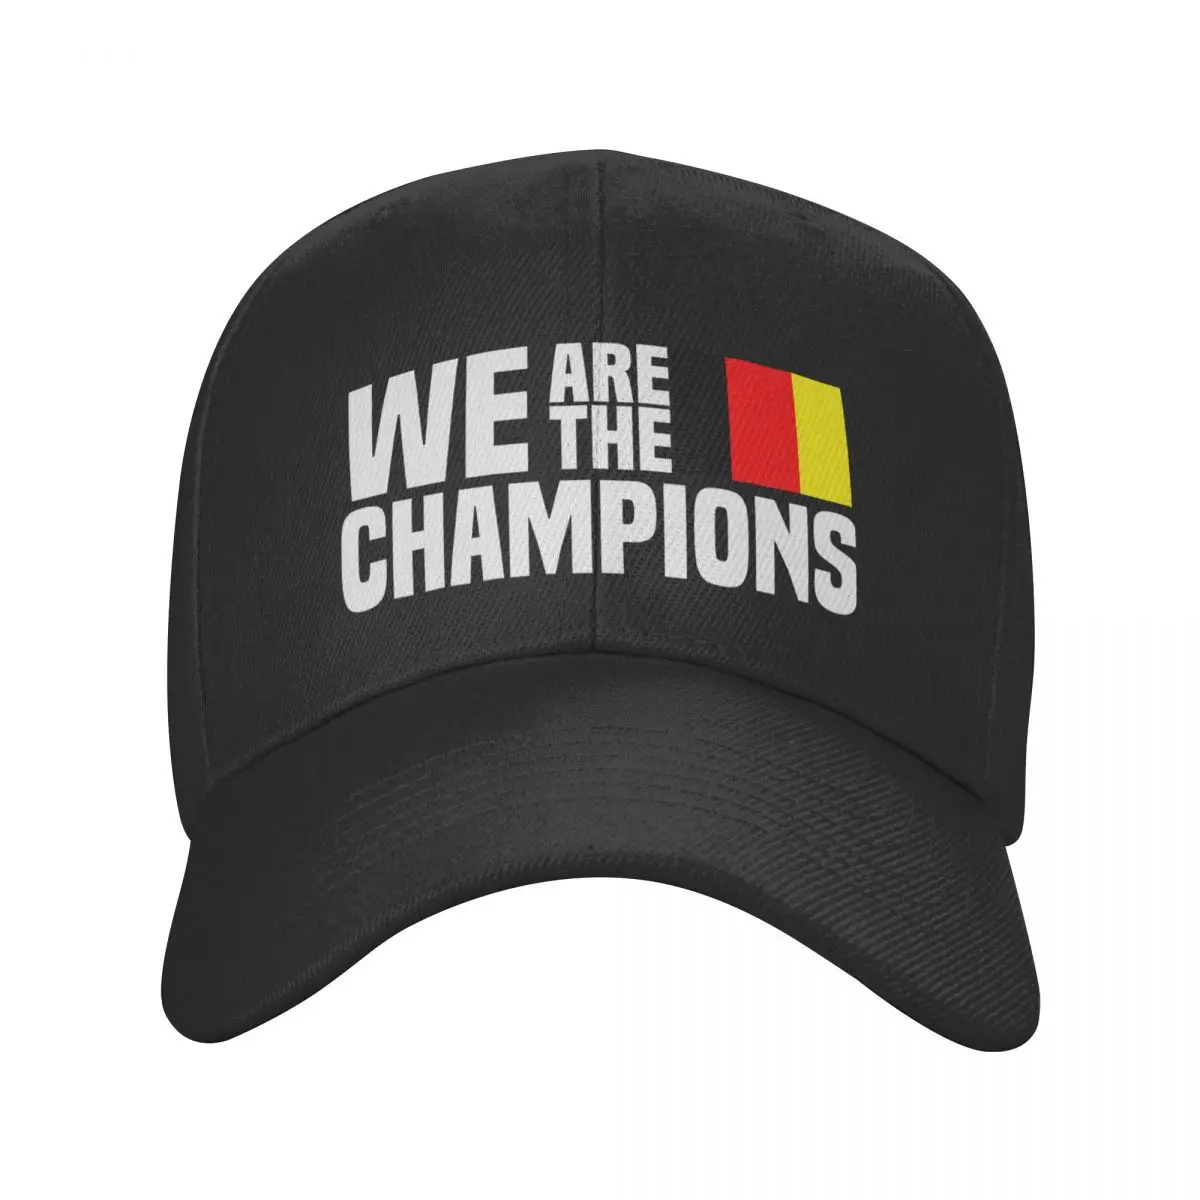 

Бейсболка We Are The Champion Бельгийская, женская, мужская, регулируемая бейсболка унисекс с флагом Бельгии, Весенняя бейсболка